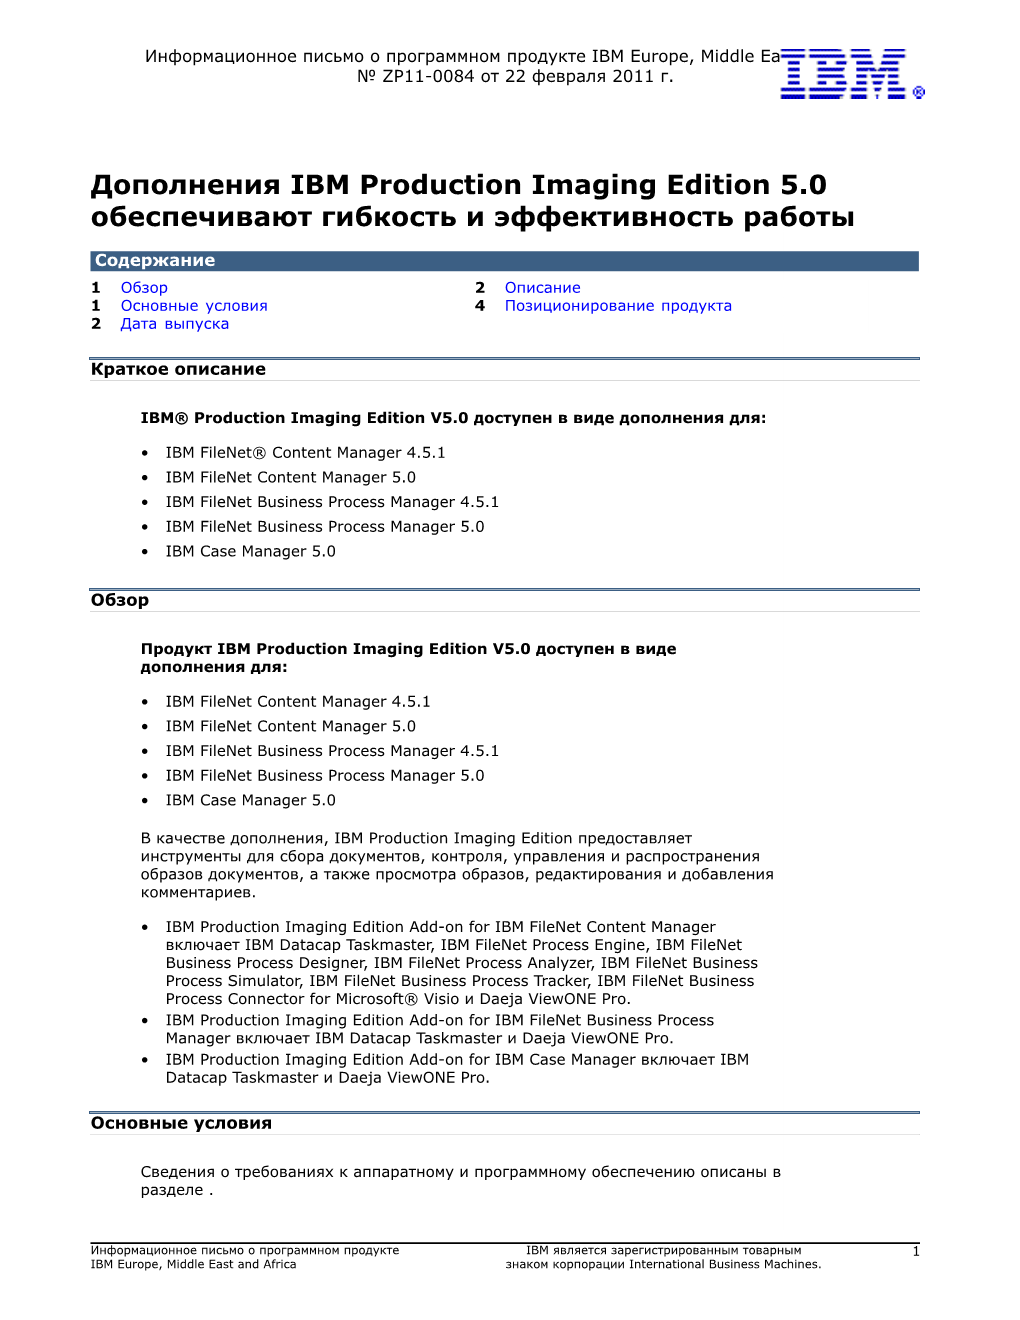 Дополнения IBM Production Imaging Edition 5.0 Обеспечивают Гибкость И Эффективность Работы